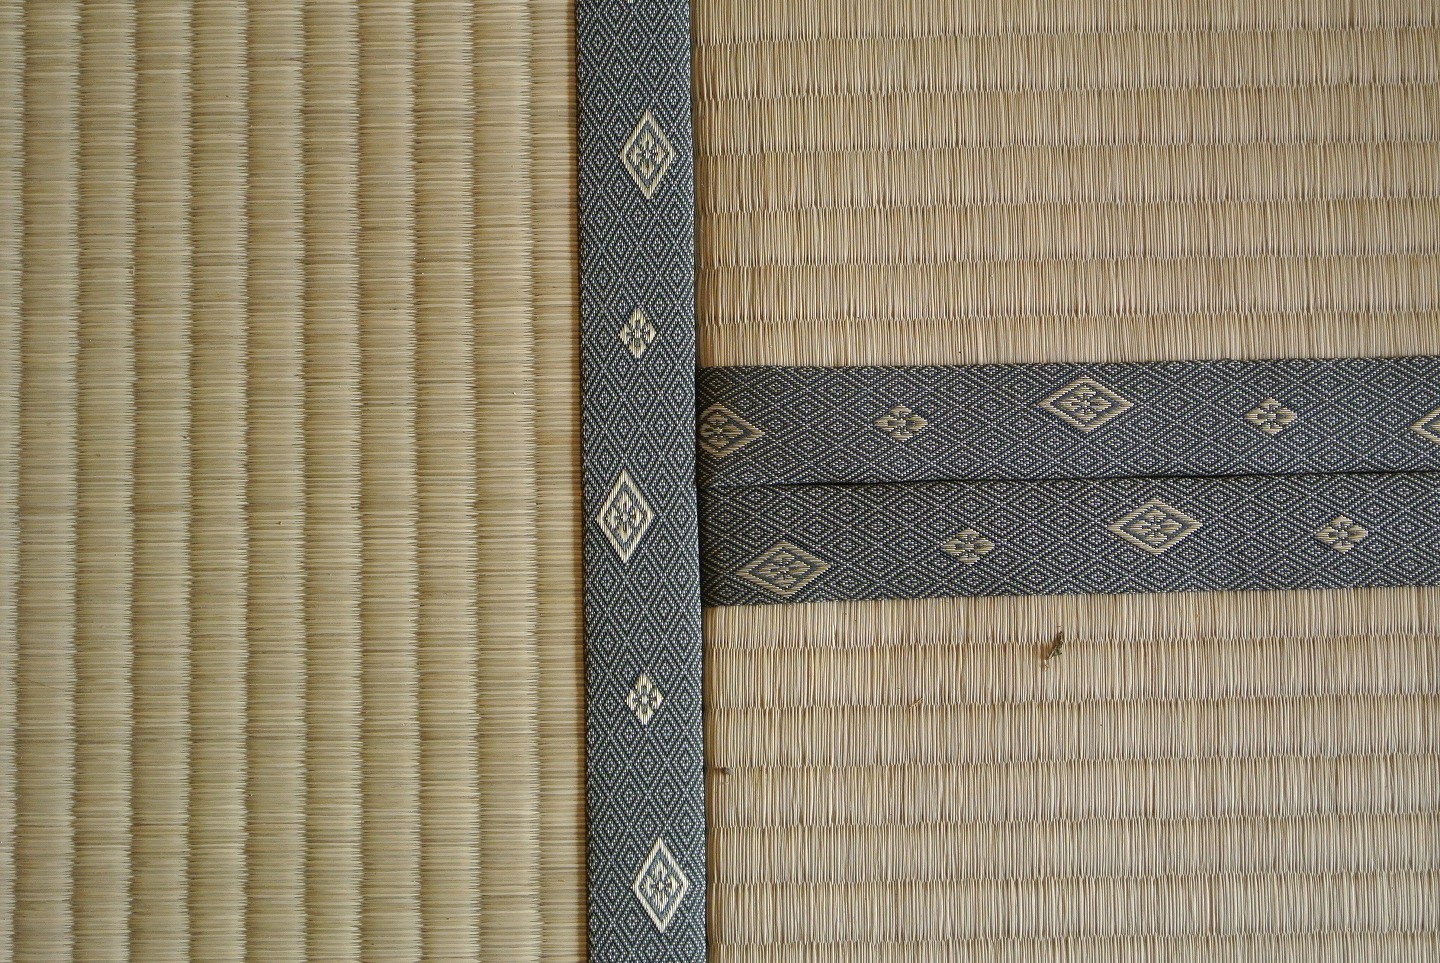 Tatami mats(Made of straw)